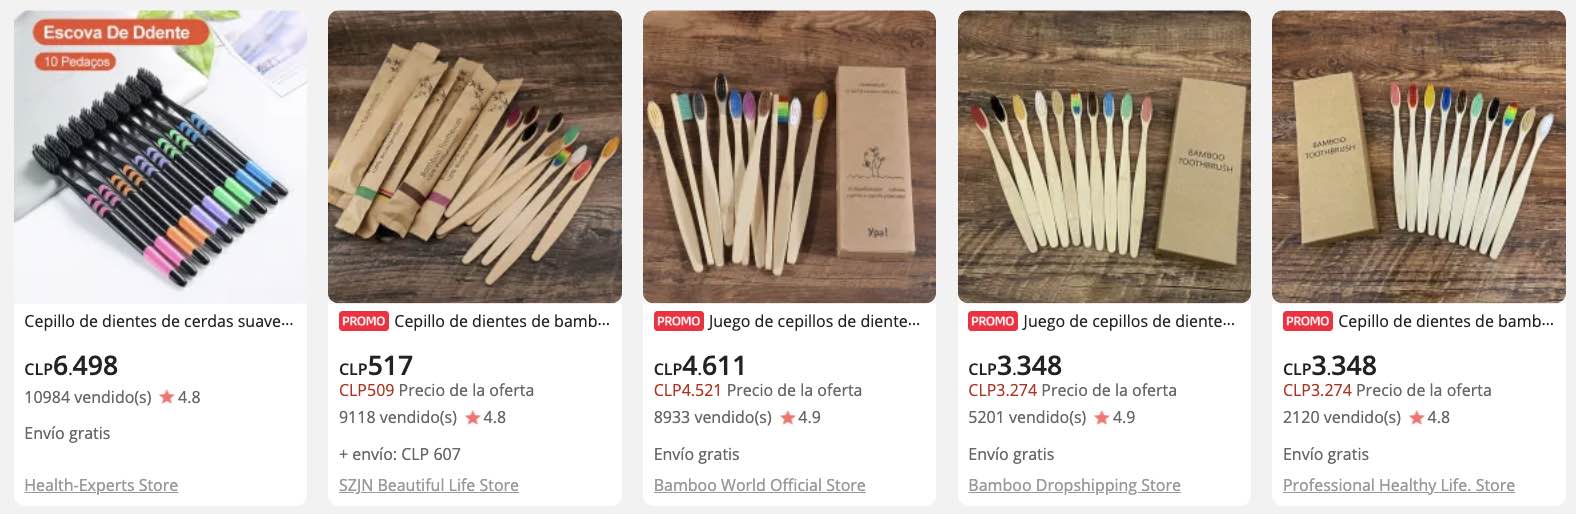 comprar cepillo de dientes de bambu en aliexpress chile